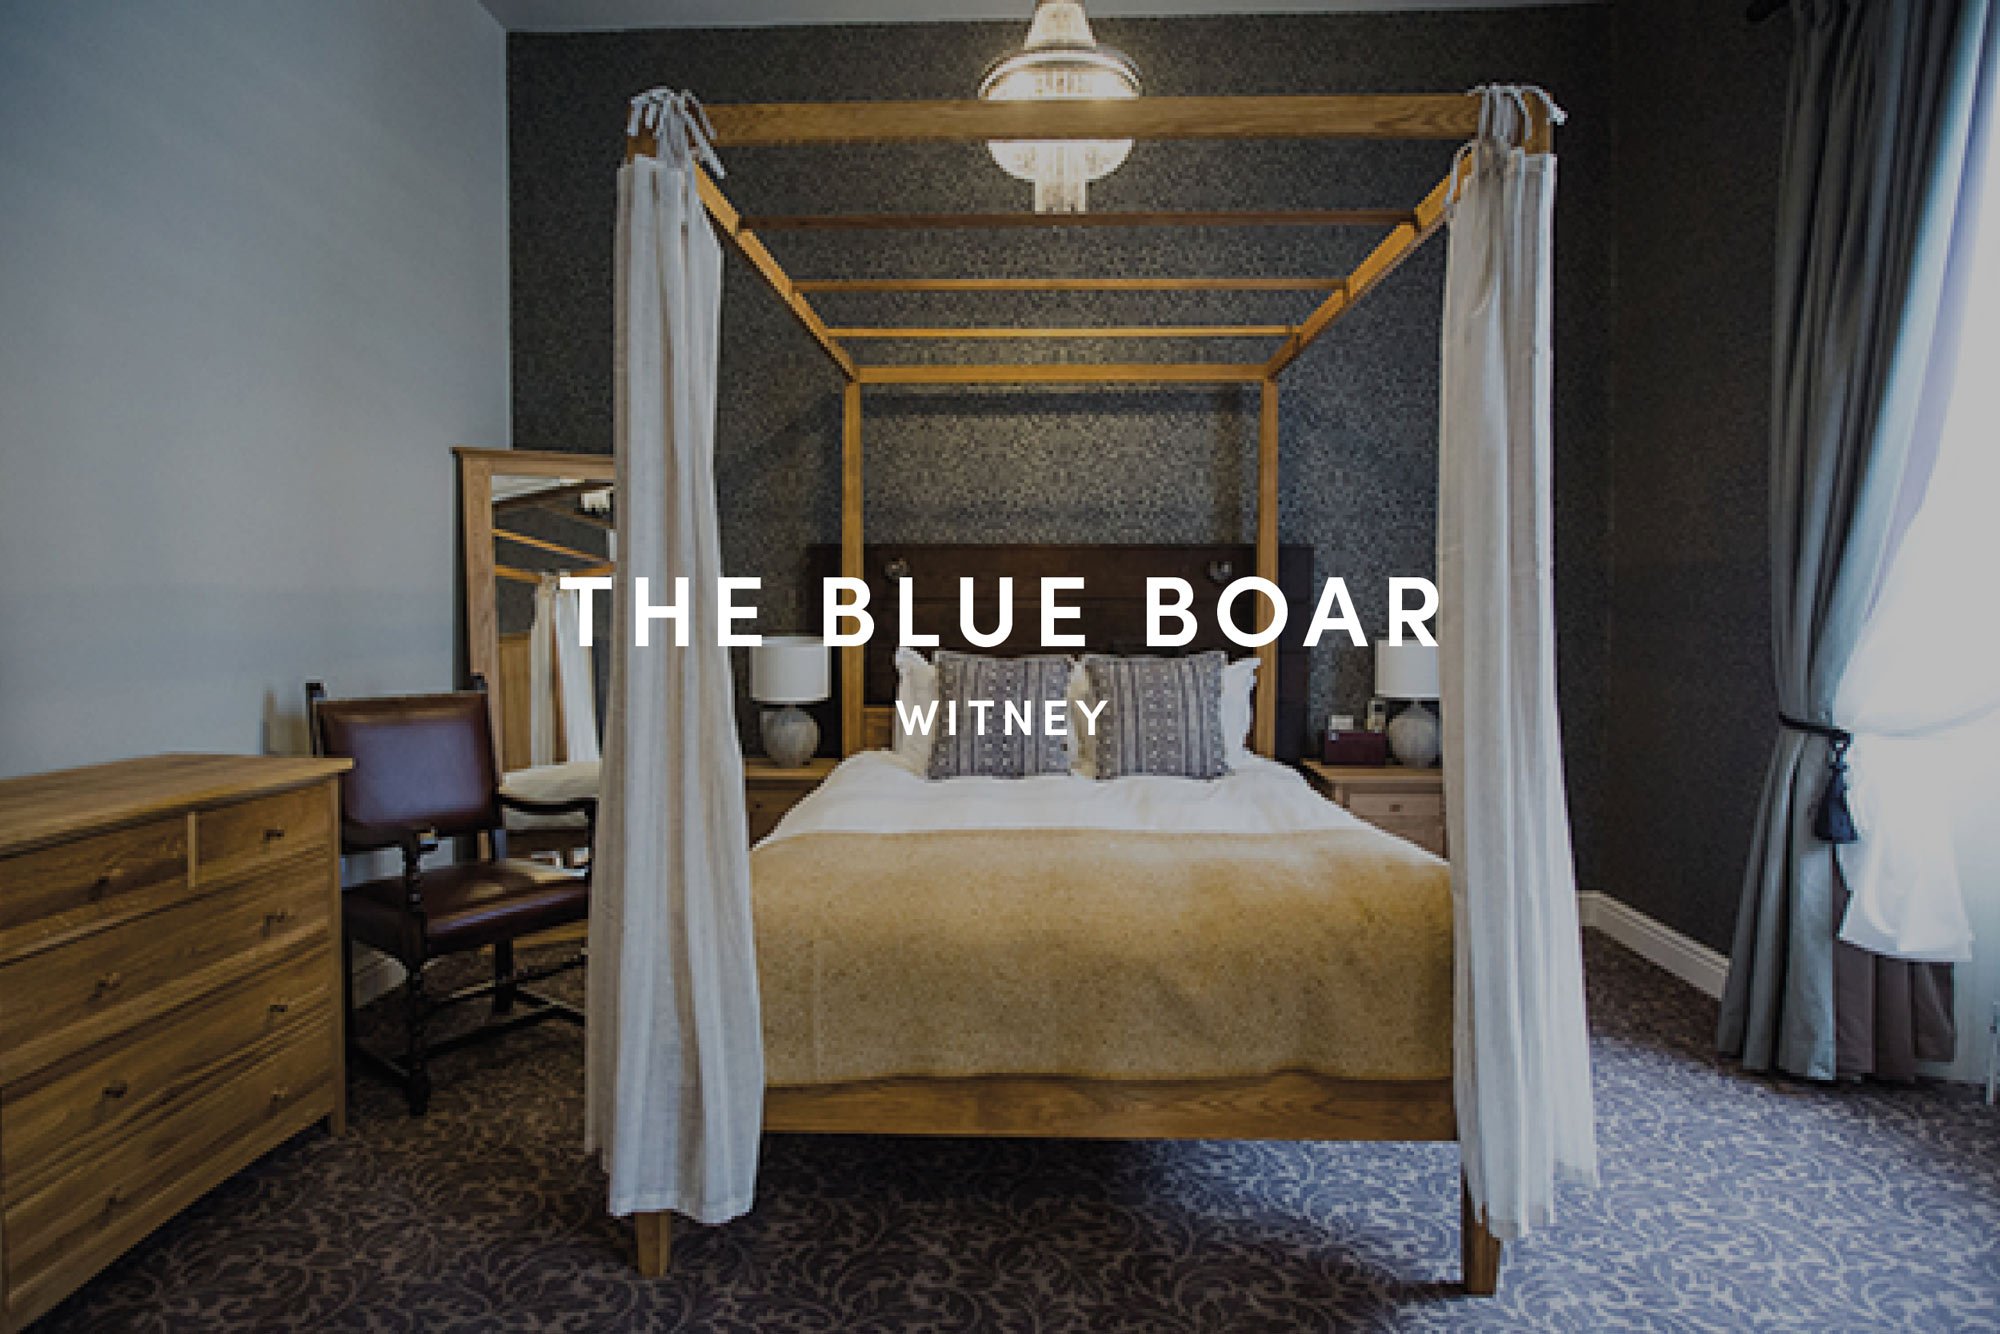 The-Blue-Boar-hotel-in-Witney-Oxfordshire.jpg